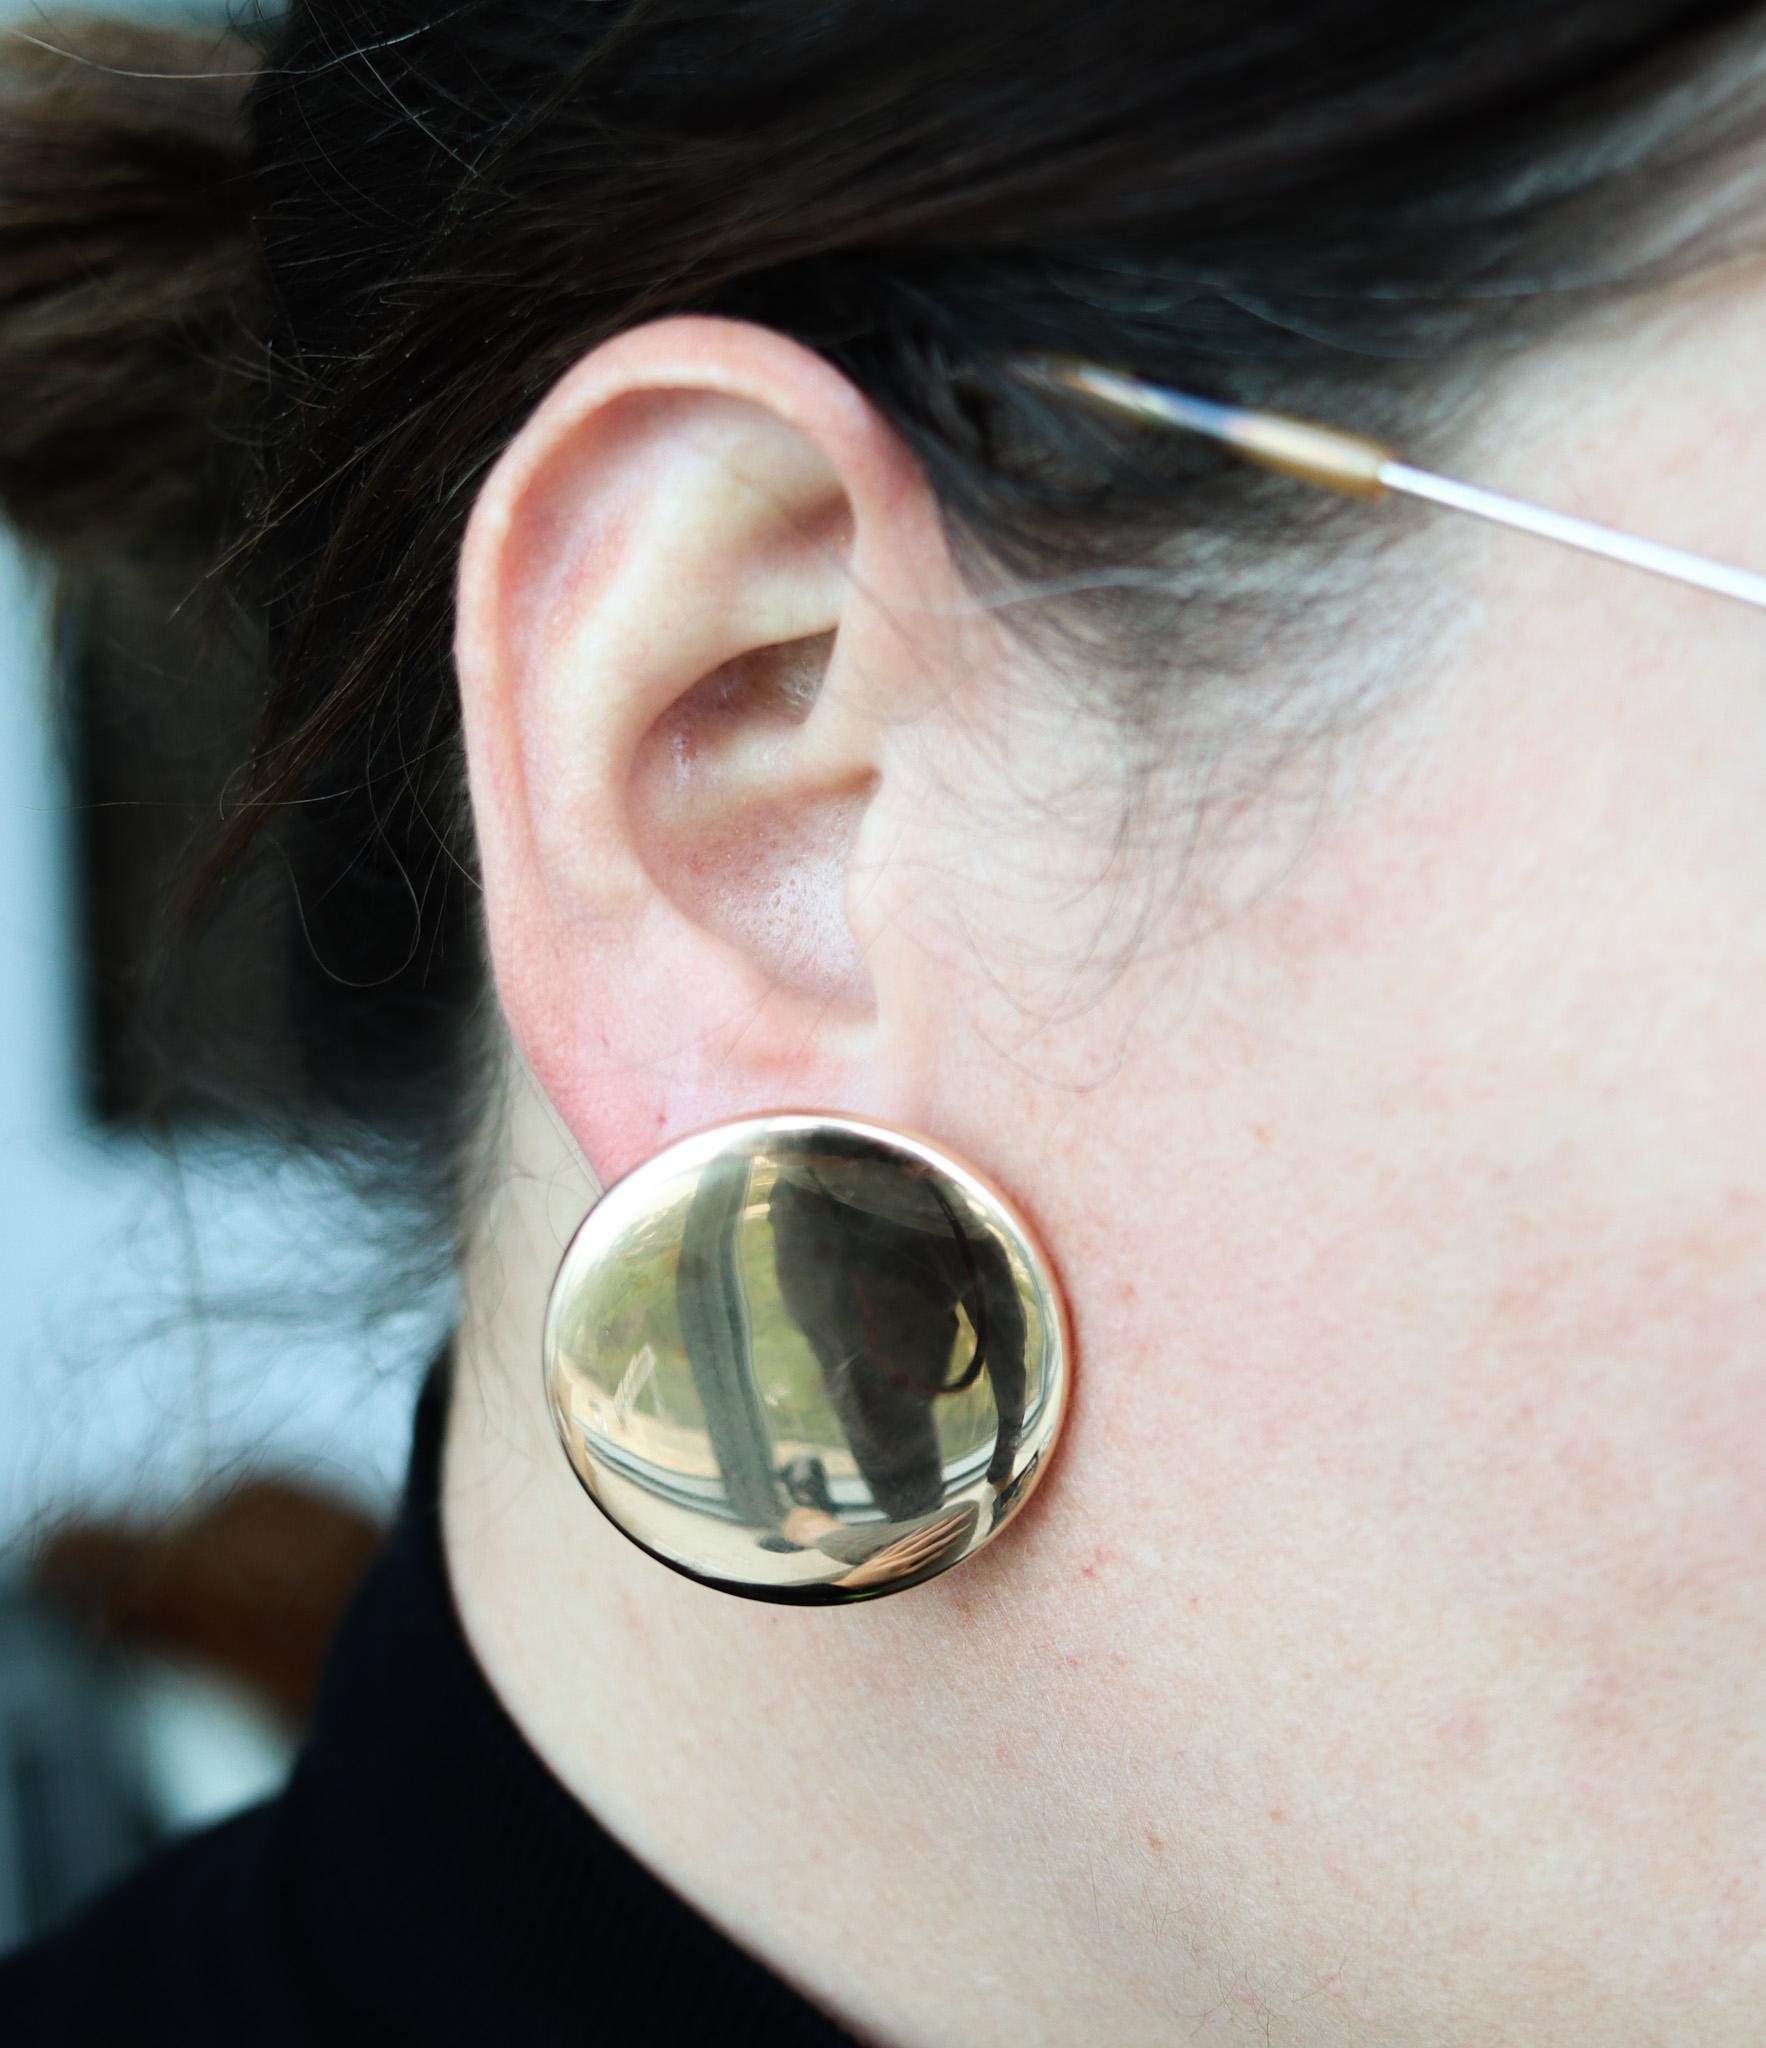 Boucles d'oreilles rondes à clip conçues par Vhernier.

Fabuleuse paire de boucles d'oreilles surdimensionnées, créées avec un design géométrique magistral à Milan en Italie par la maison de joaillerie exclusive Vhernier. Ces boucles d'oreilles